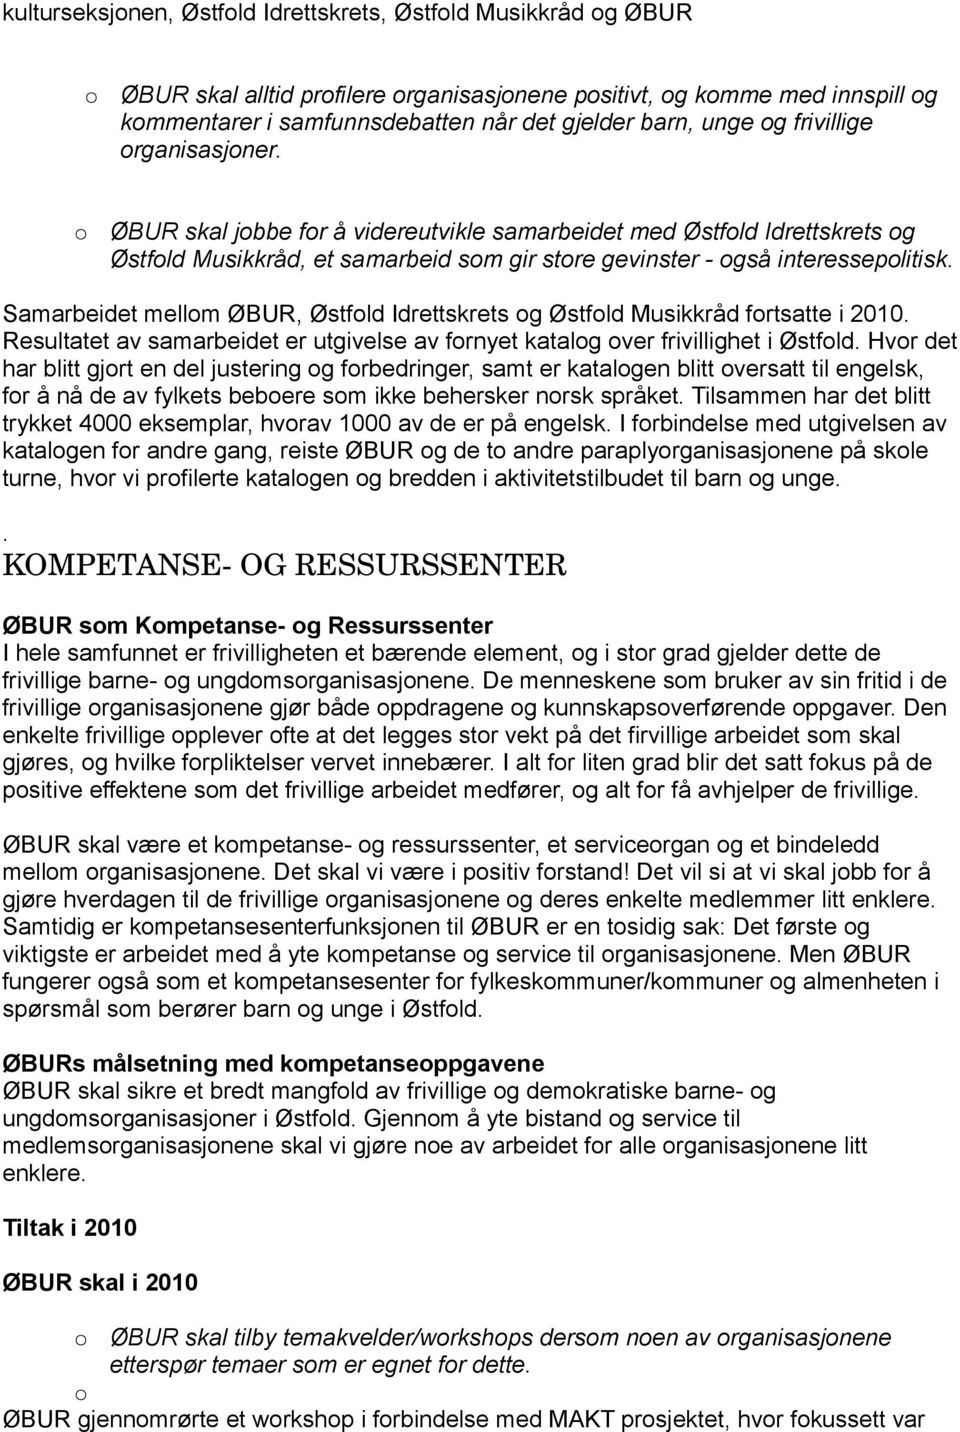 Samarbeidet mellom ØBUR, Østfold Idrettskrets og Østfold Musikkråd fortsatte i 2010. Resultatet av samarbeidet er utgivelse av fornyet katalog over frivillighet i Østfold.